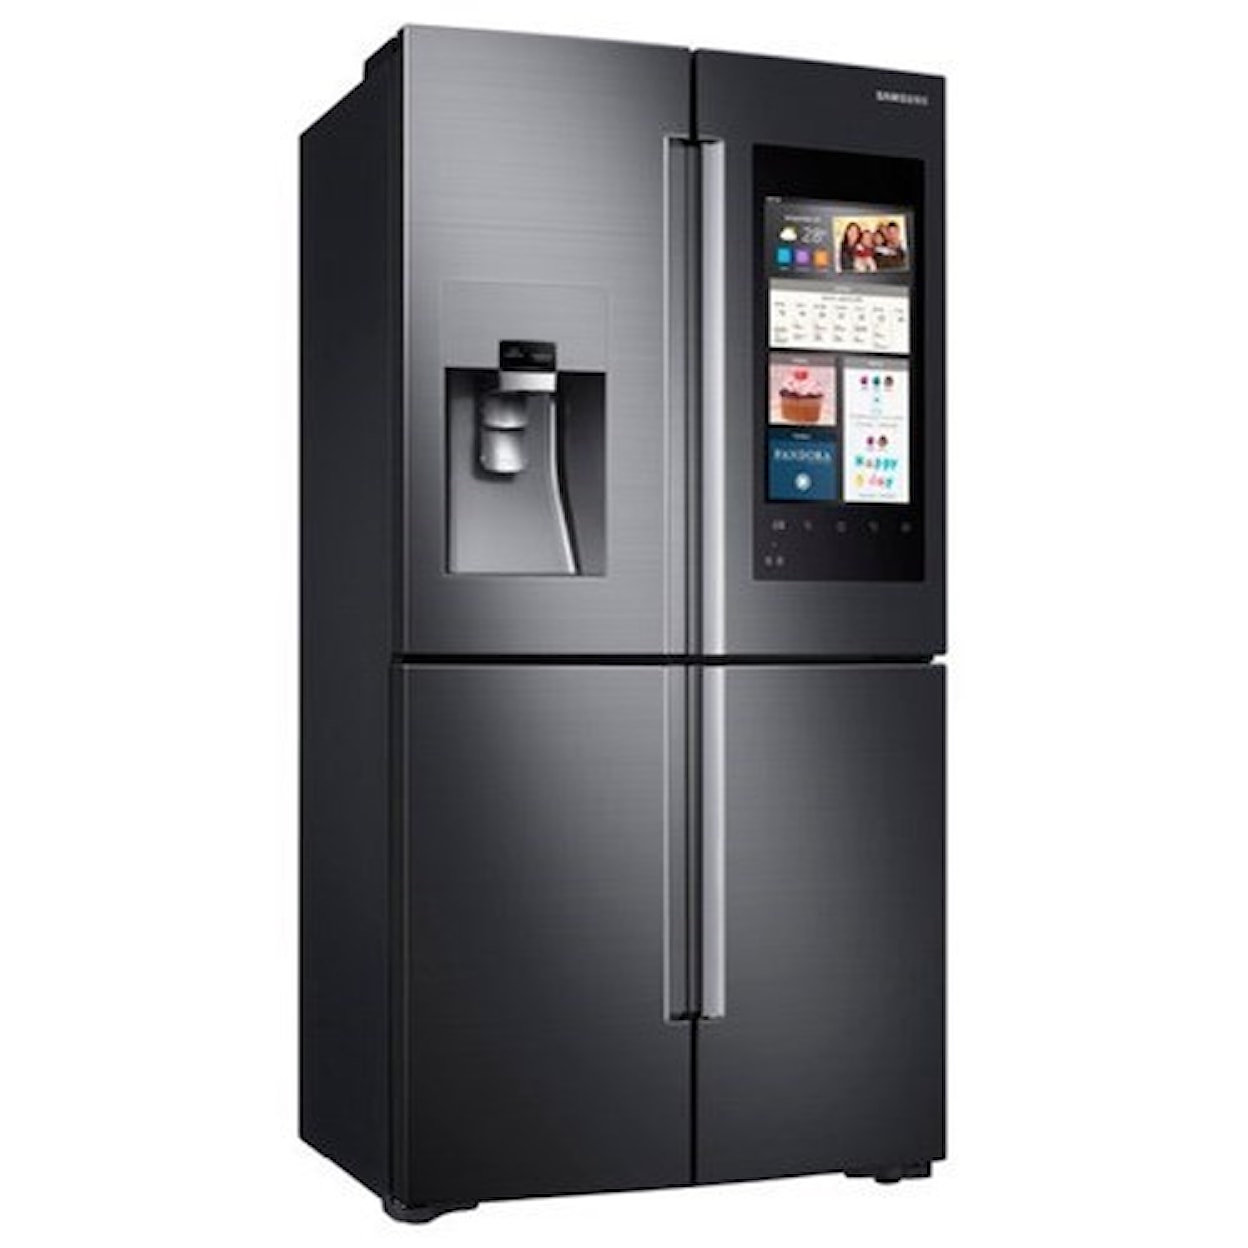 Samsung Appliances French Door Refrigerators 22 Cu.Ft. Counter Depth 4-Door Flex Fridge